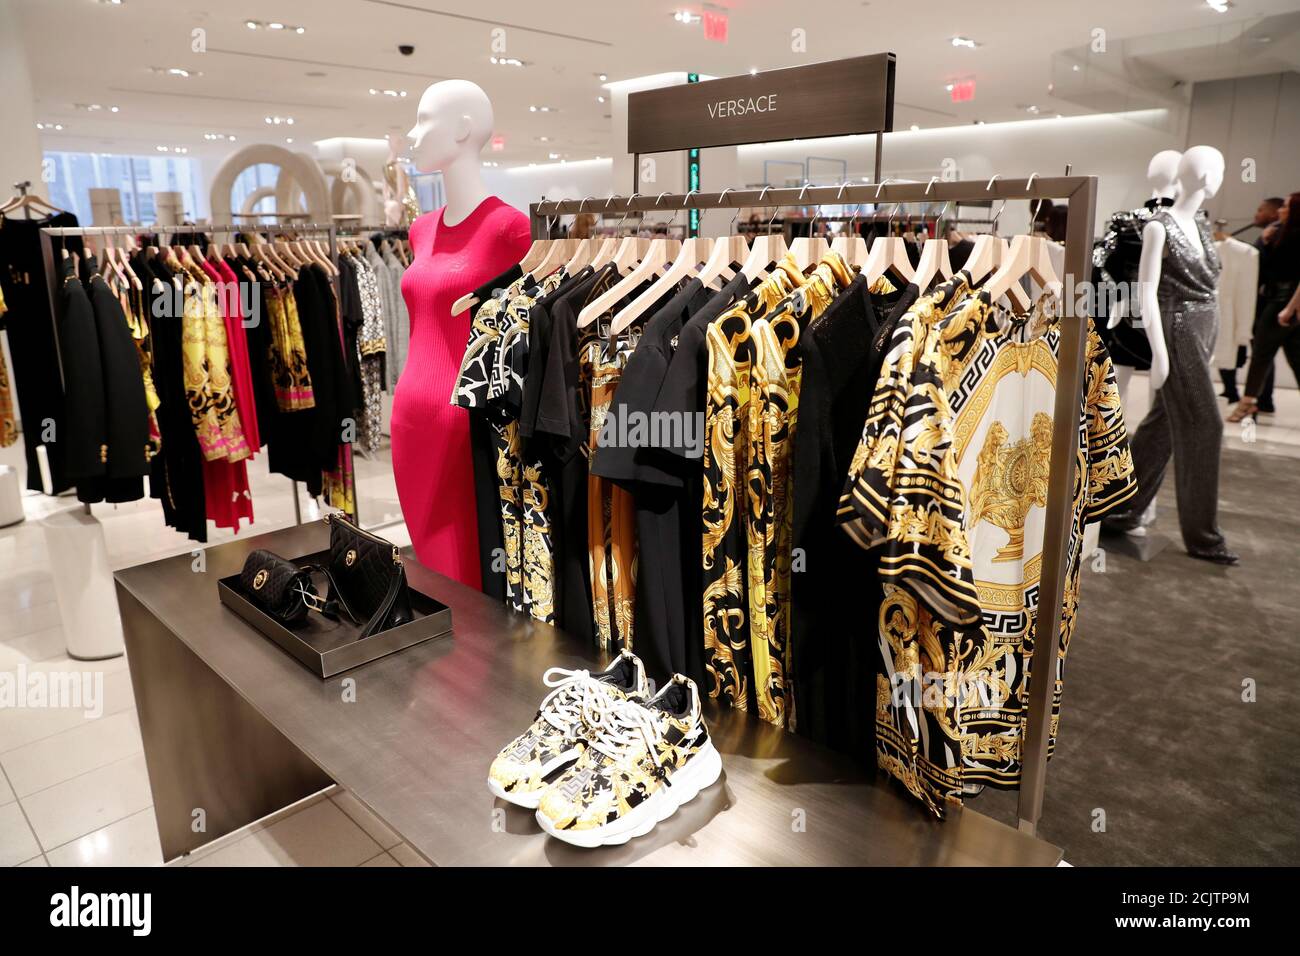 La ropa Versace se ve en exhibición en la tienda insignia Nordstrom durante  una vista previa de los medios en Nueva York, ., 21 de octubre de  2019. REUTERS/Shannon Stapleton Fotografía de